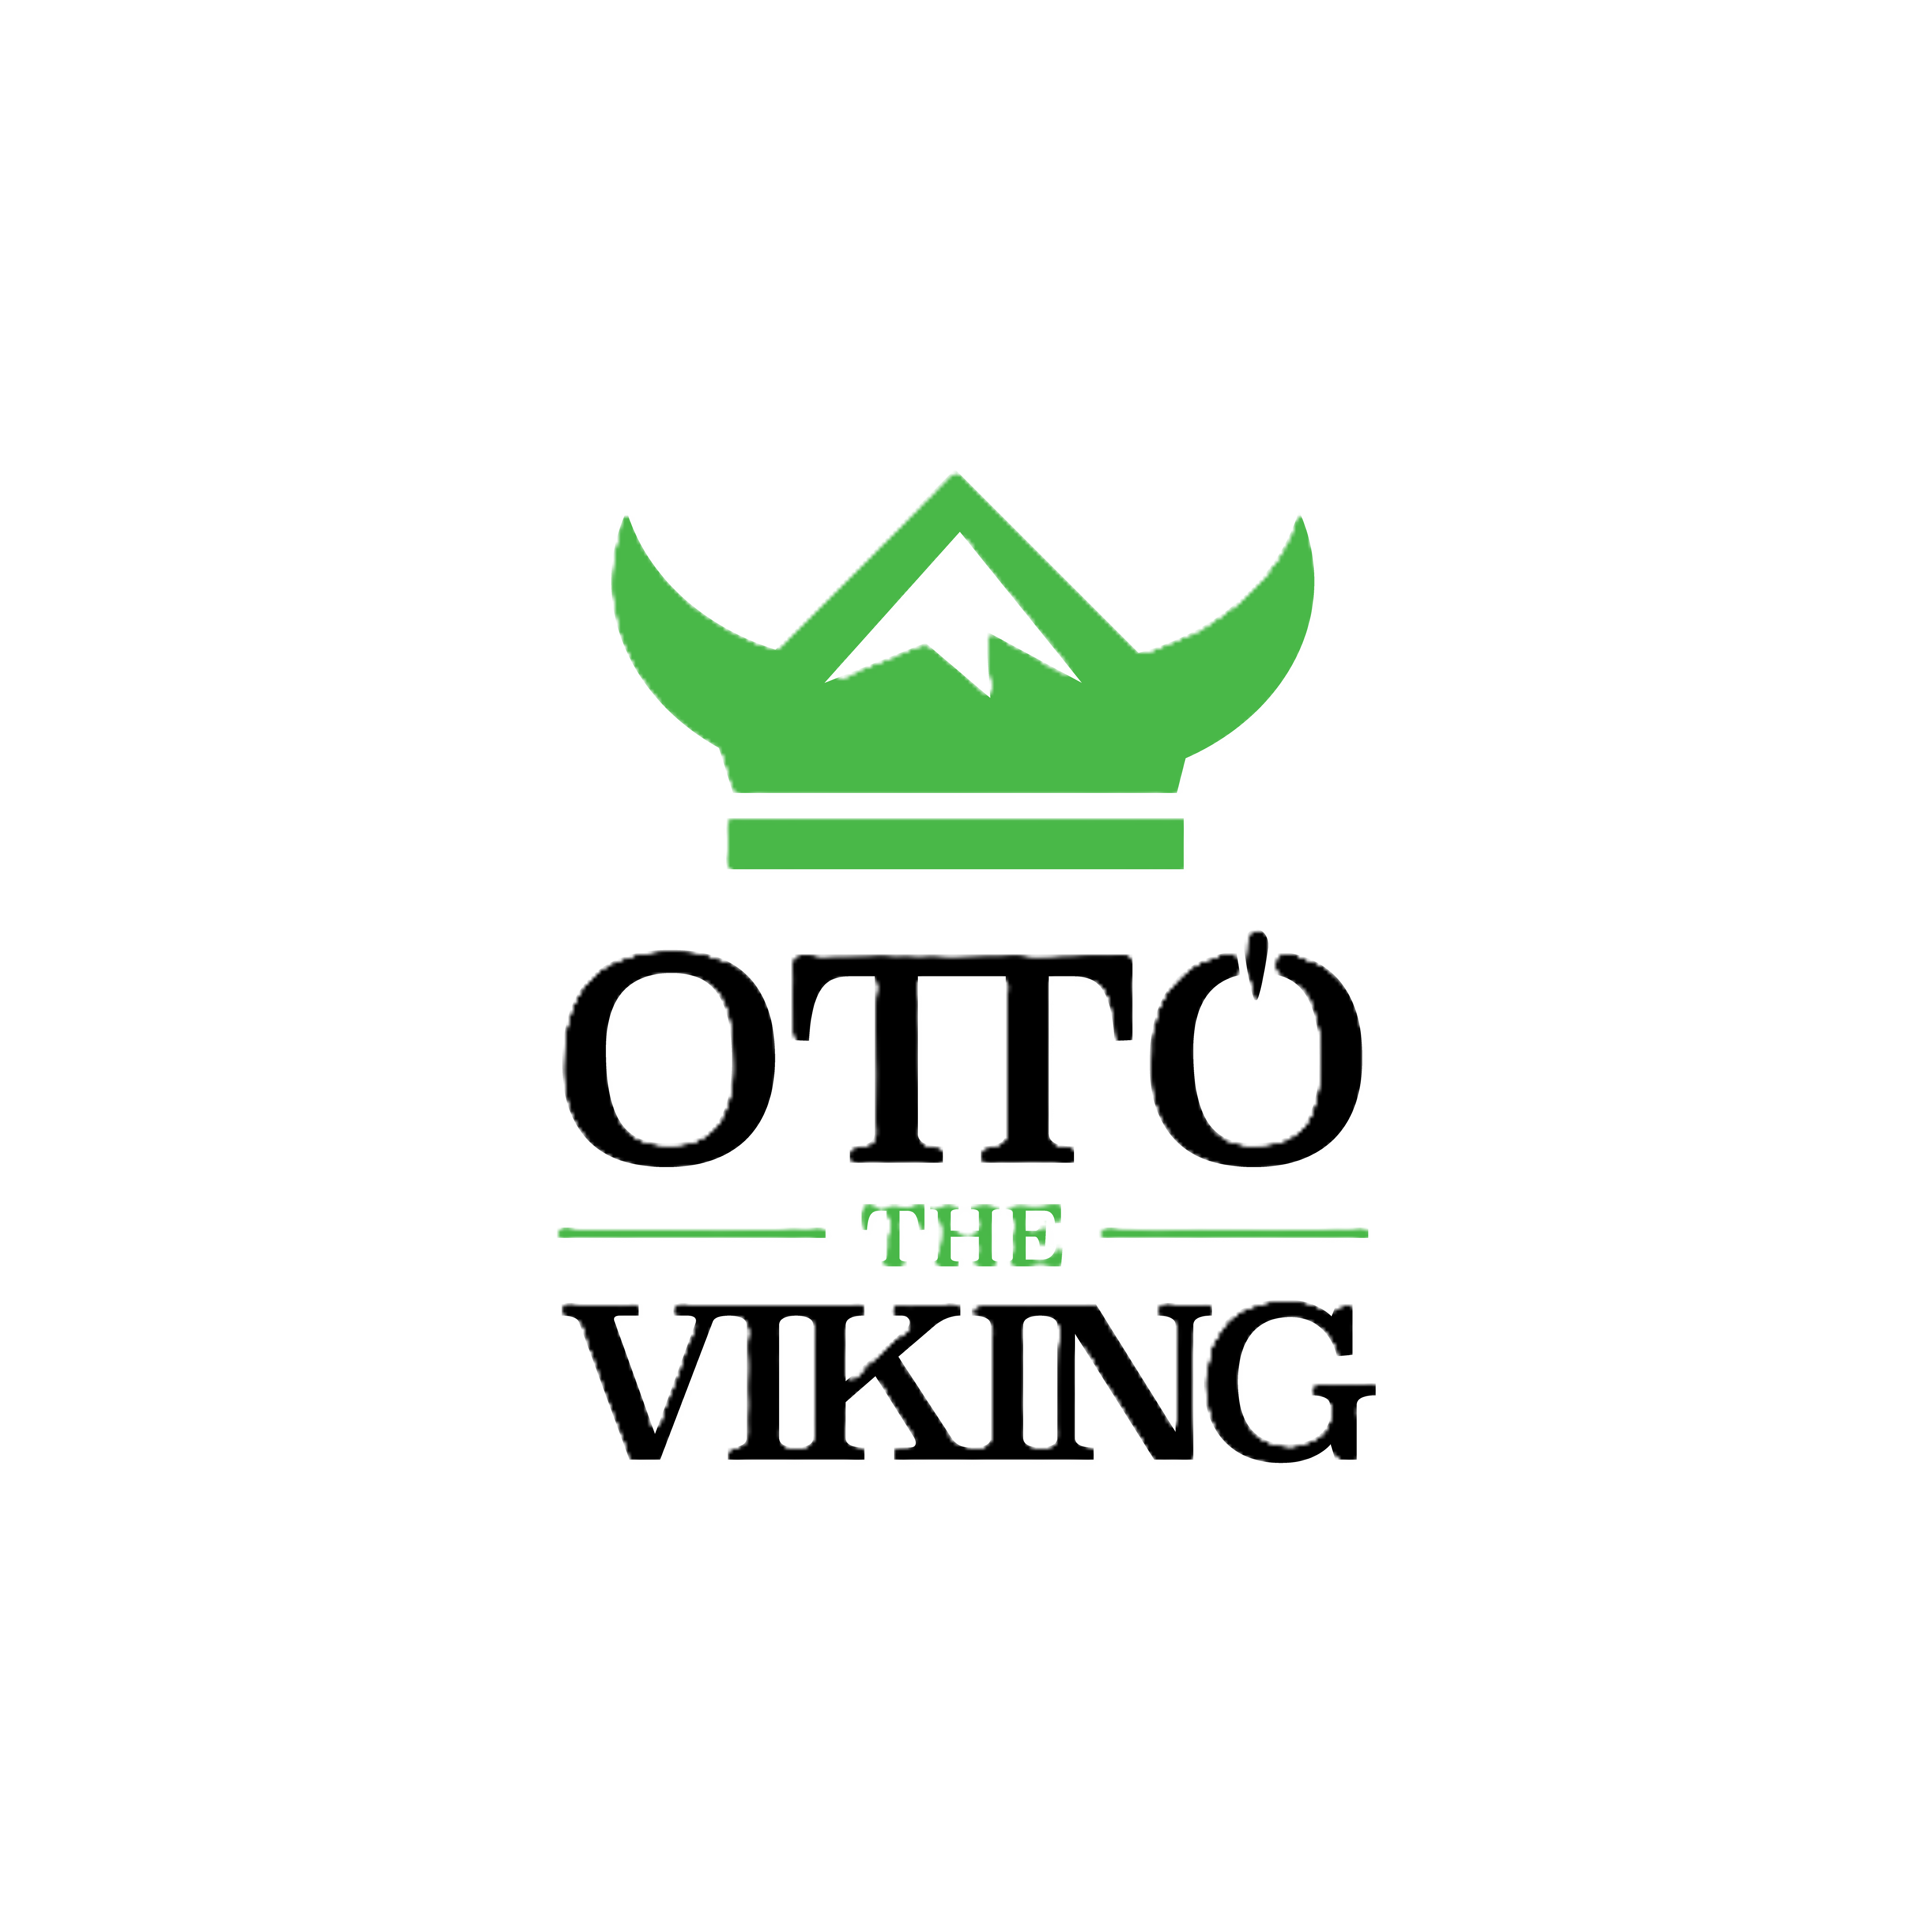 Otto the viking